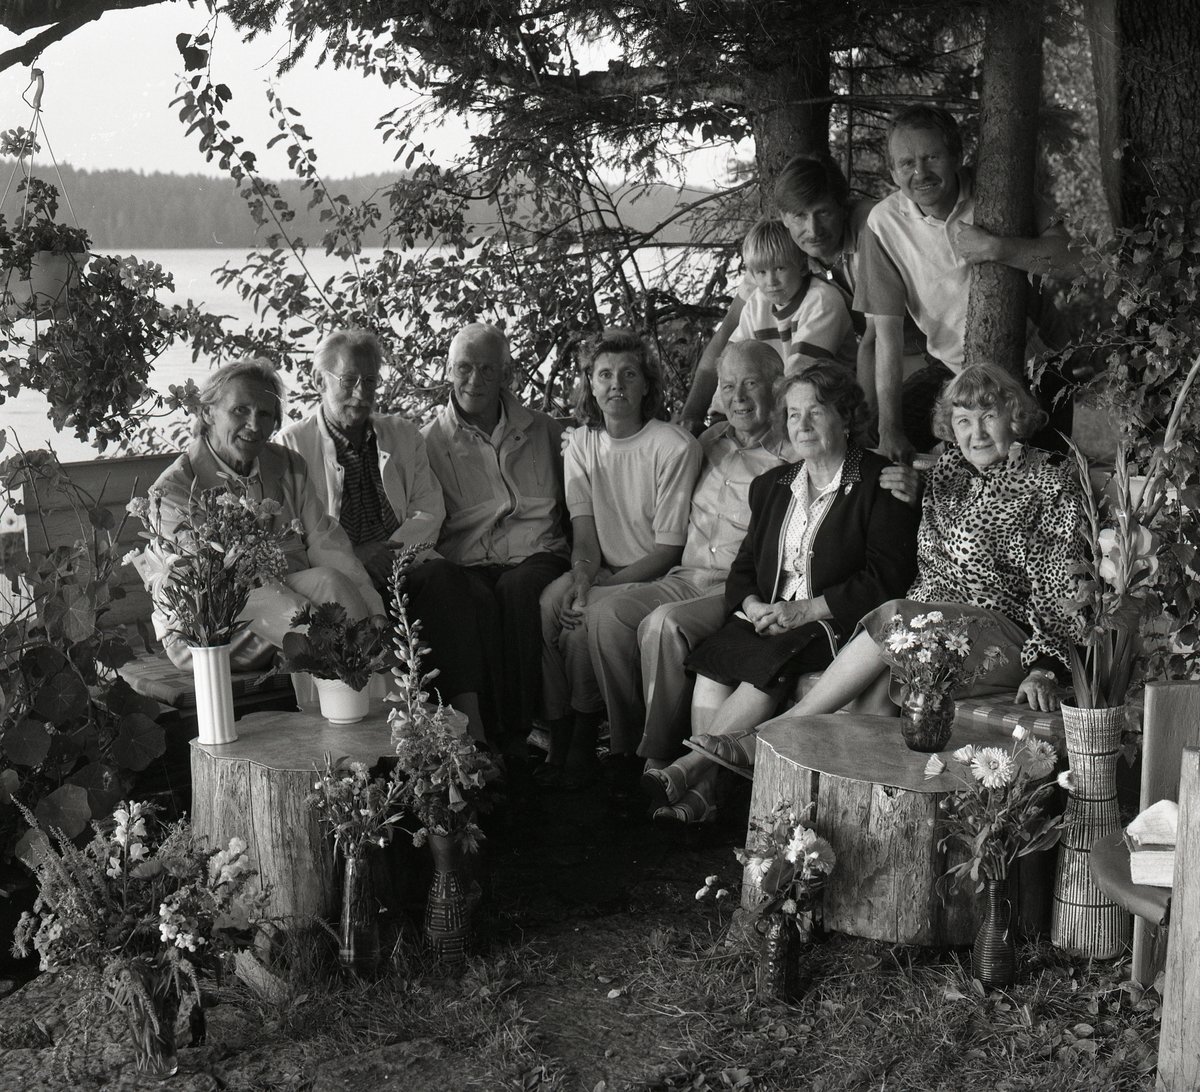 Hilding och Adéle sitter med några till människor under ett träd intill vattnet. Det hänger blommor i trädet och det är blommor i vaser som står på stubbarna. 80-årsdag 14 augusti 1990.